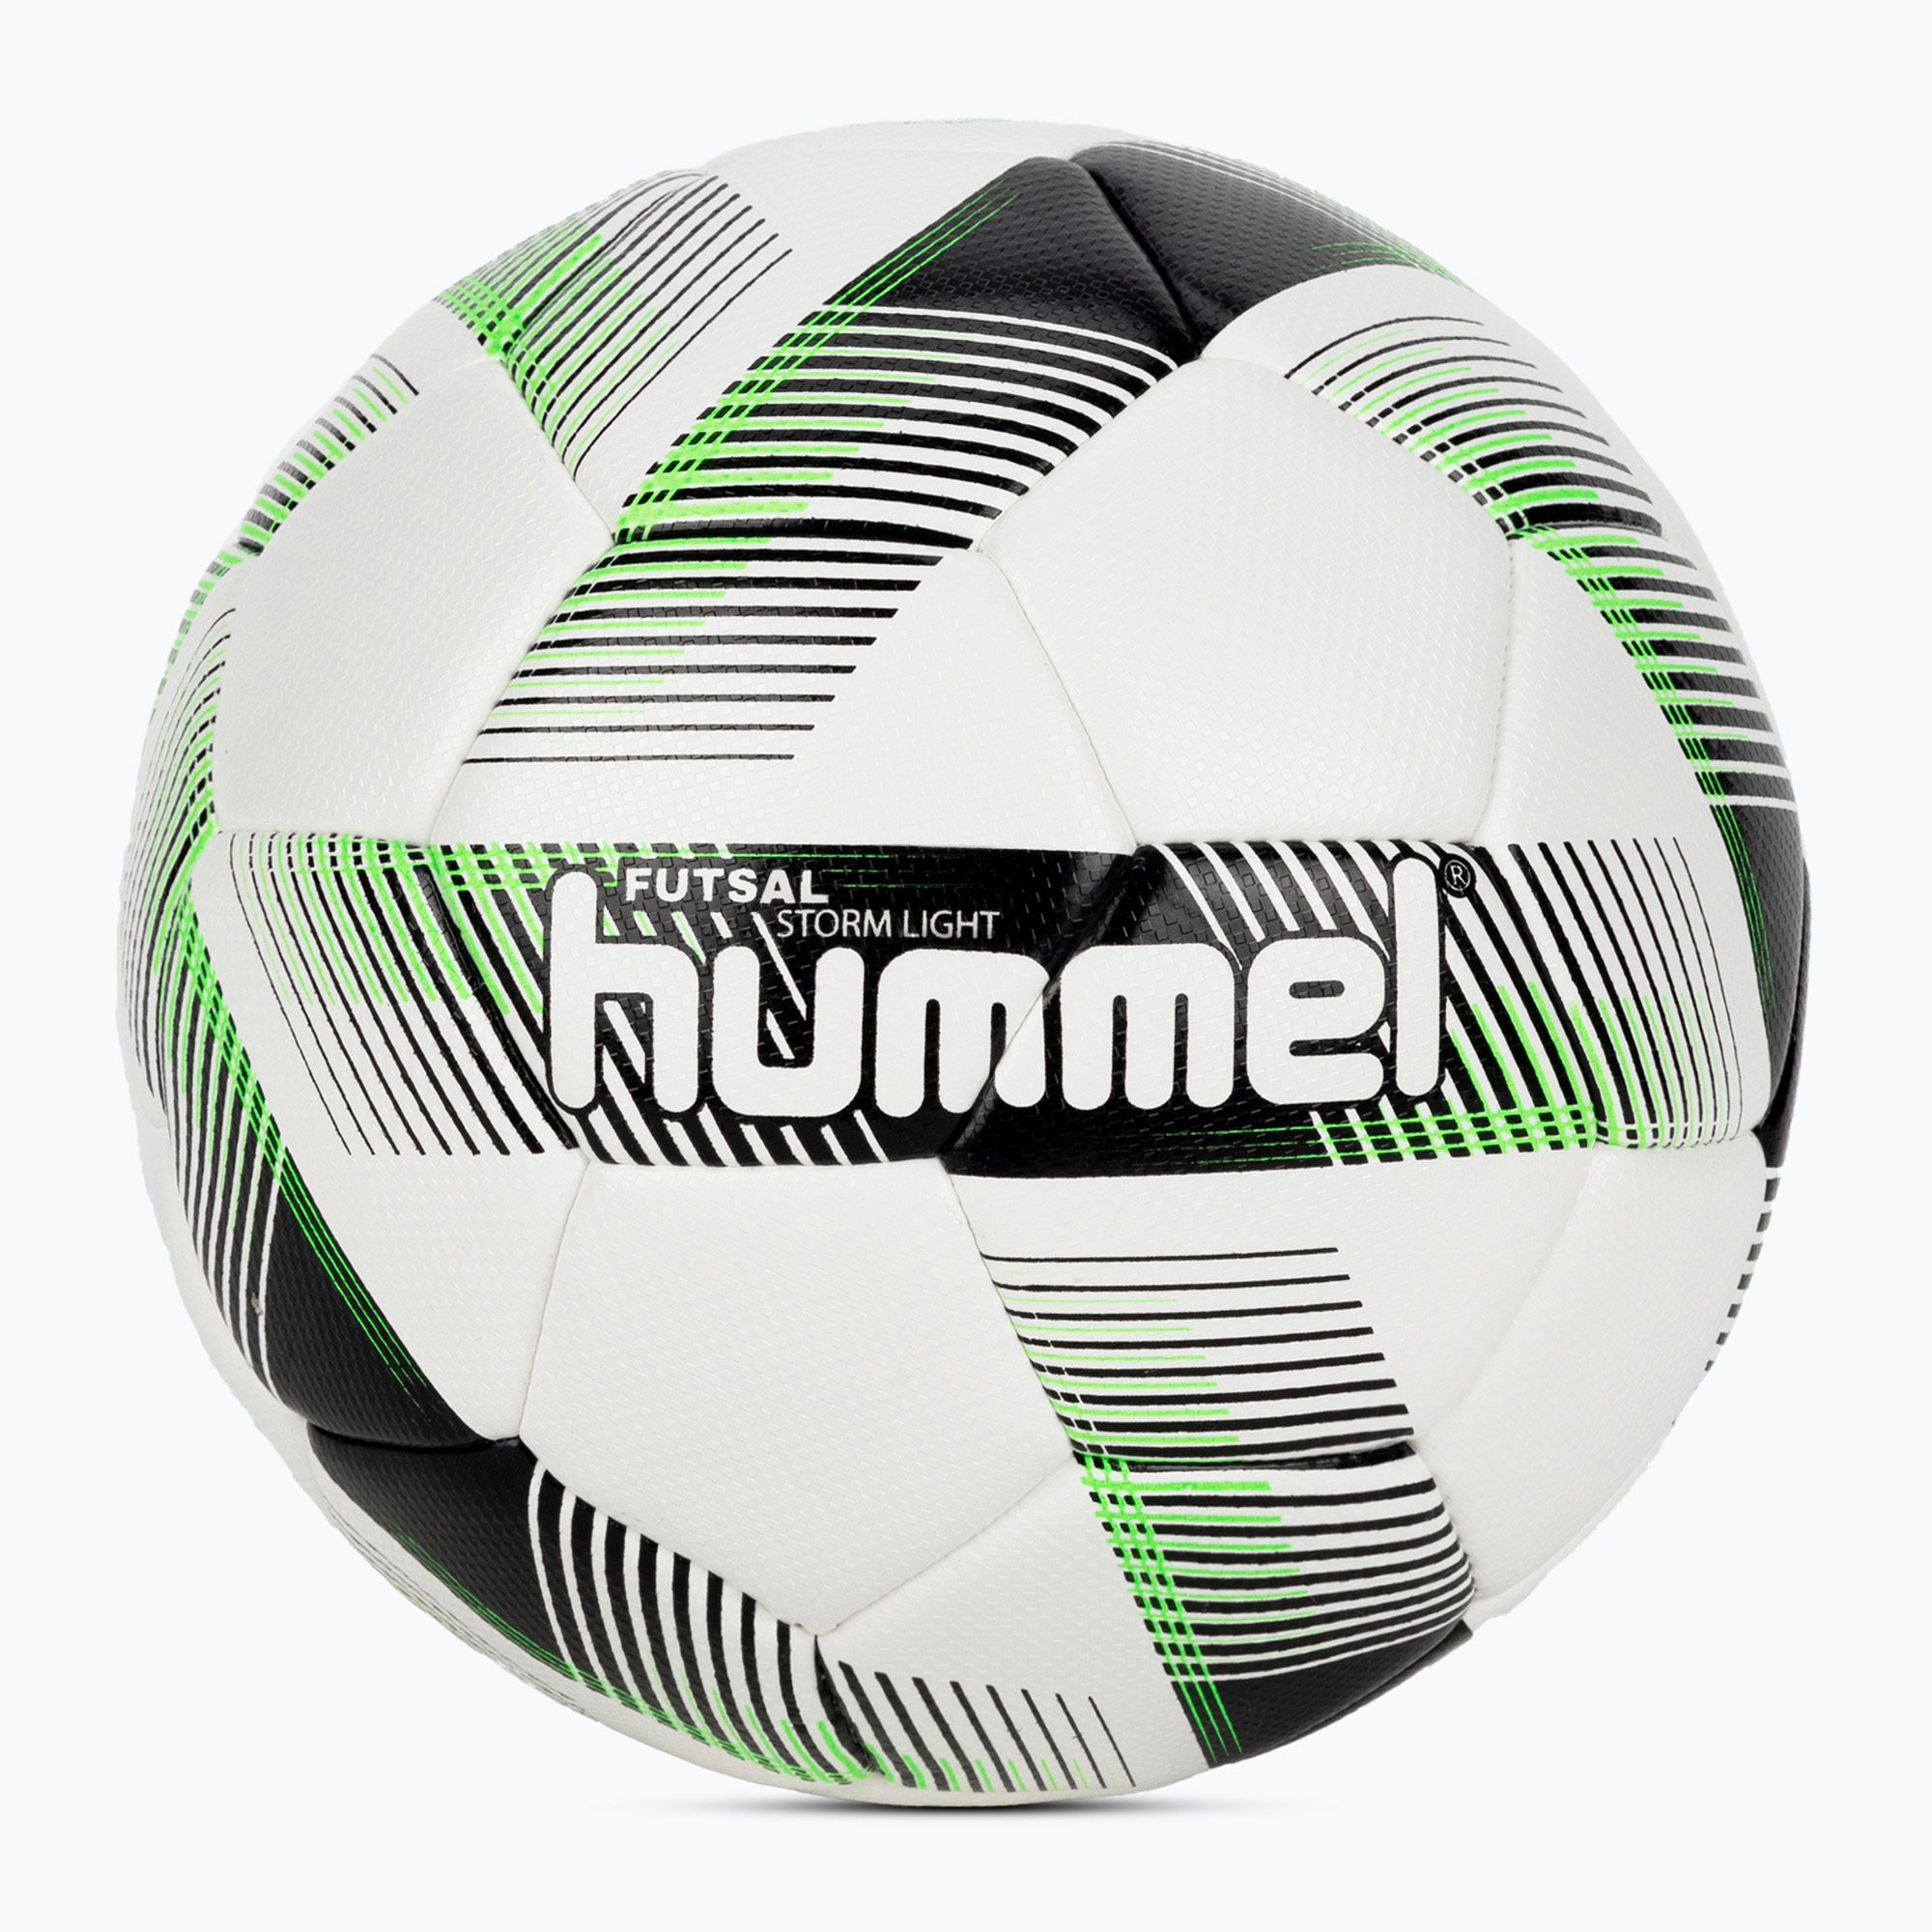 Hummel Storm Light FB футболна топка бяло/черно/зелено размер 4